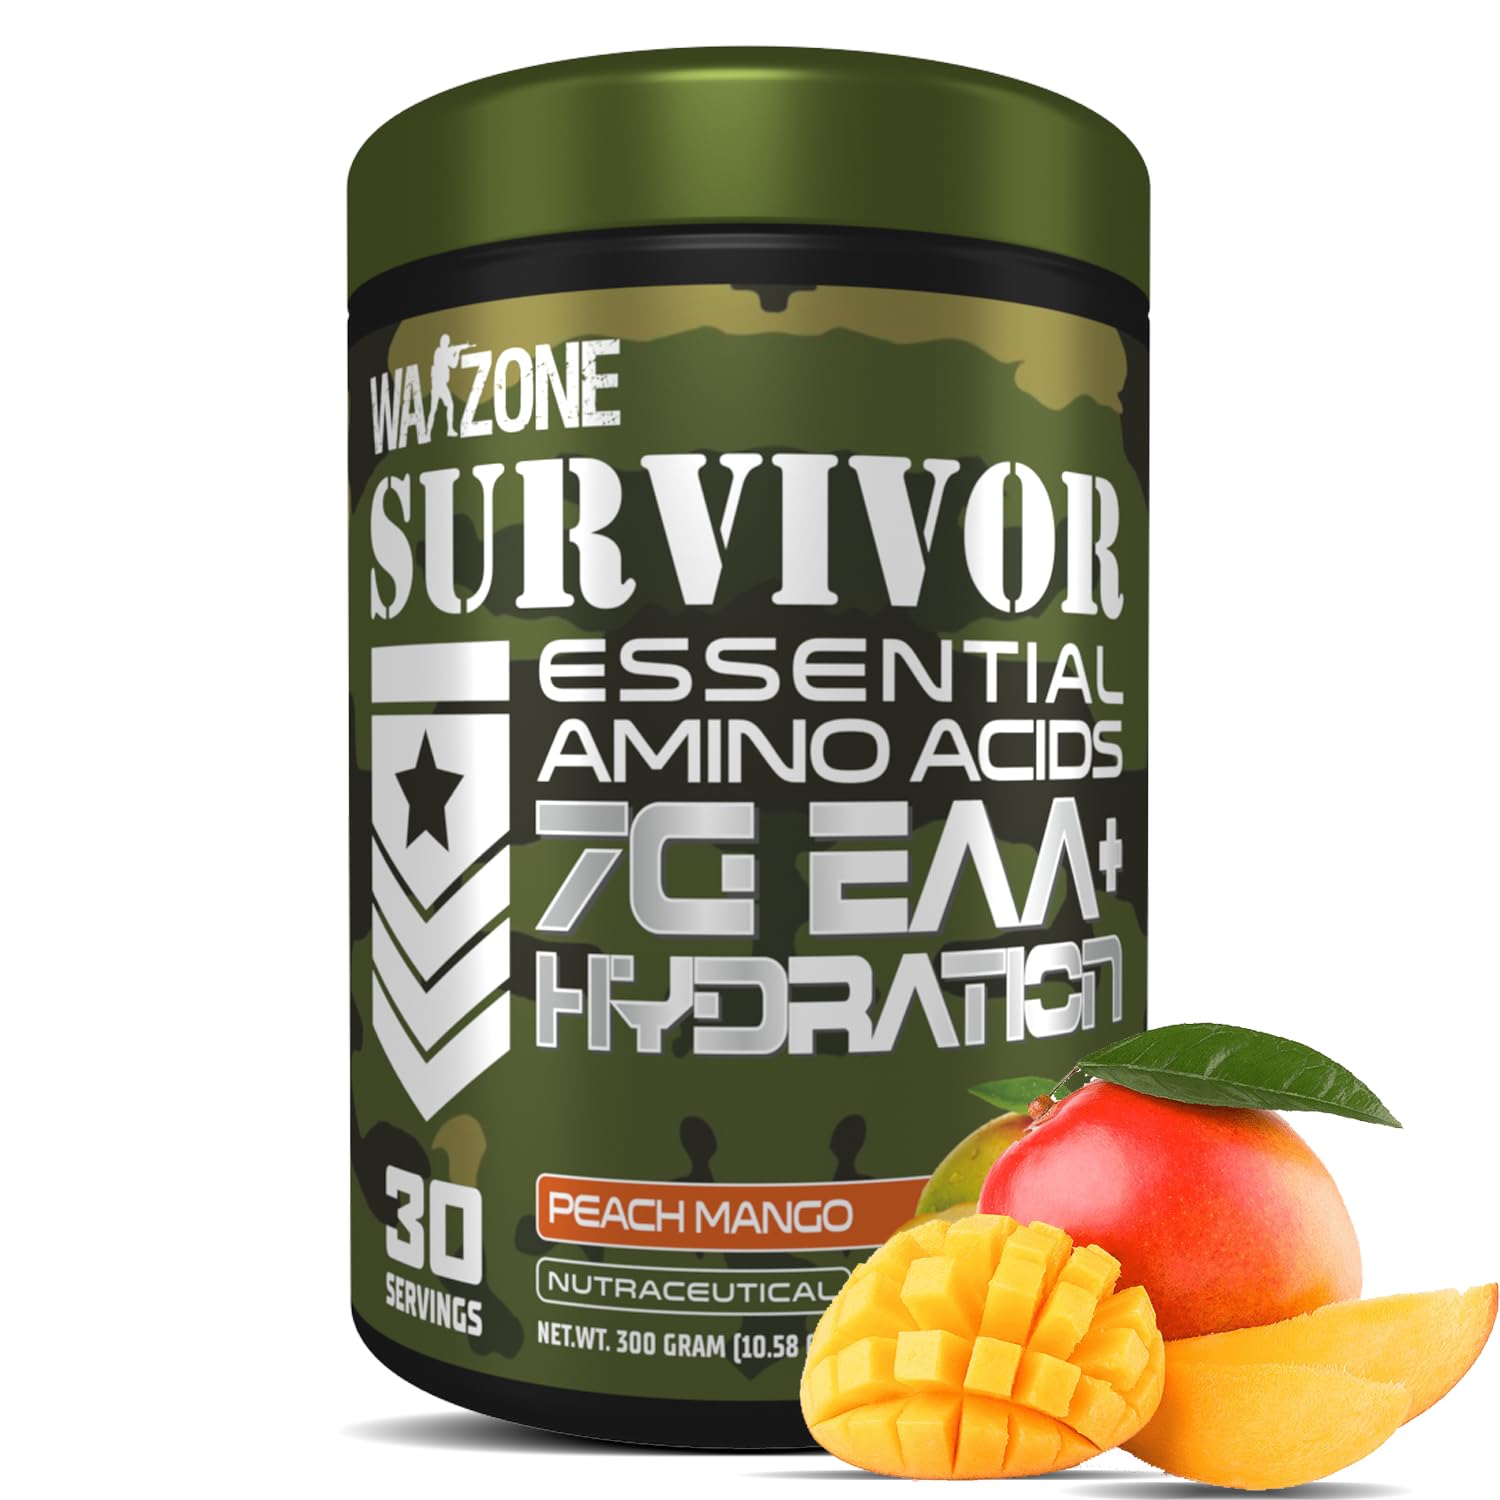 Warzone Survivor Essential Amino Acids 7G EAA + Hydration